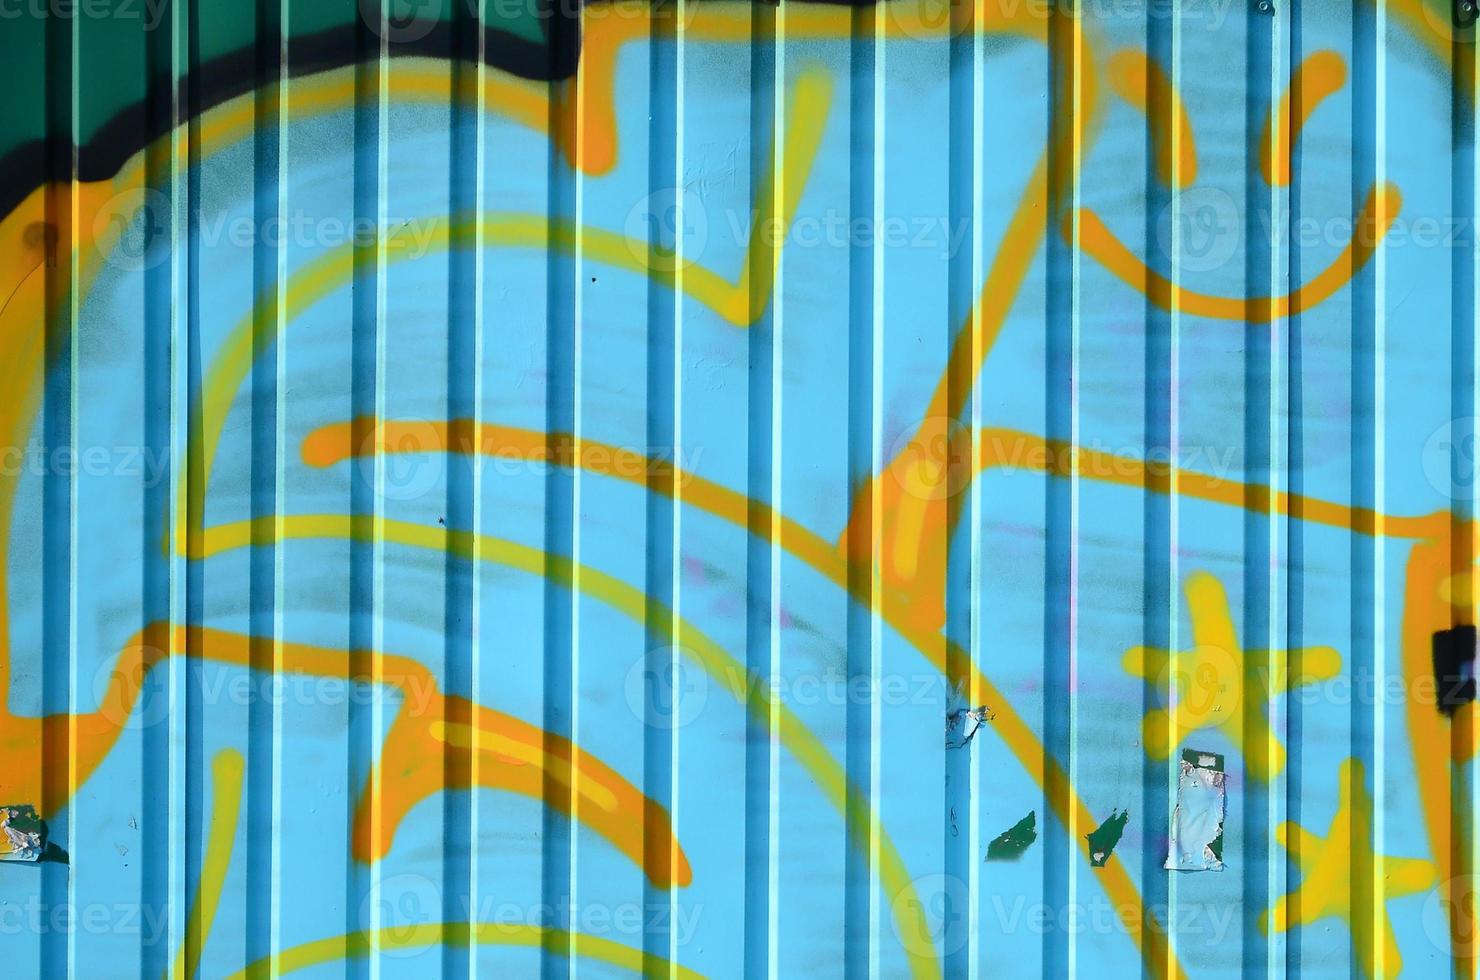 fragment av graffiti ritningar. de gammal vägg dekorerad med måla fläckar i de stil av gata konst kultur. färgad bakgrund textur i kall toner foto